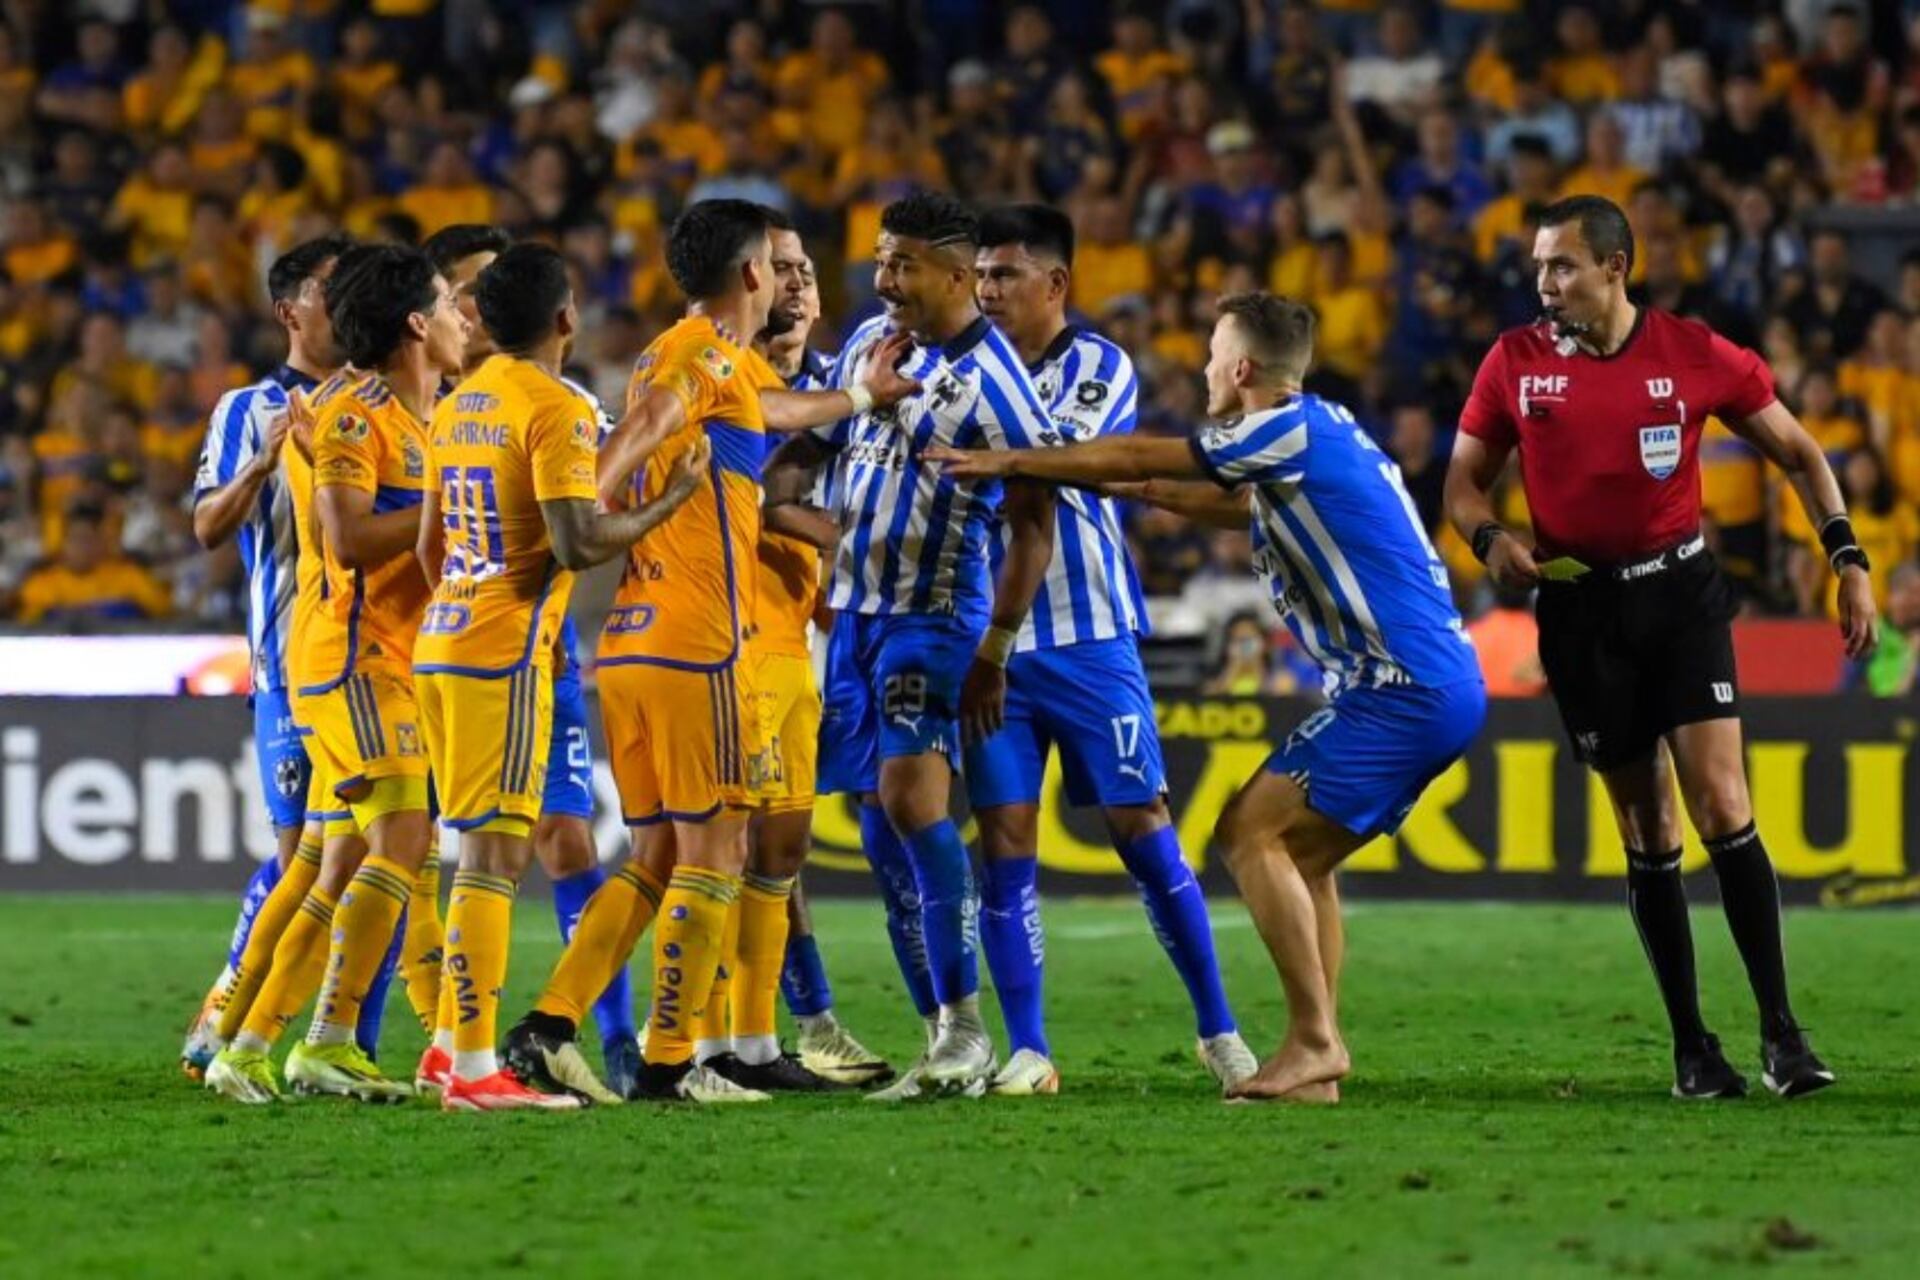 (VIDEO) La sanción que podría tener Carioca, tras golpe con puño a Gallardo